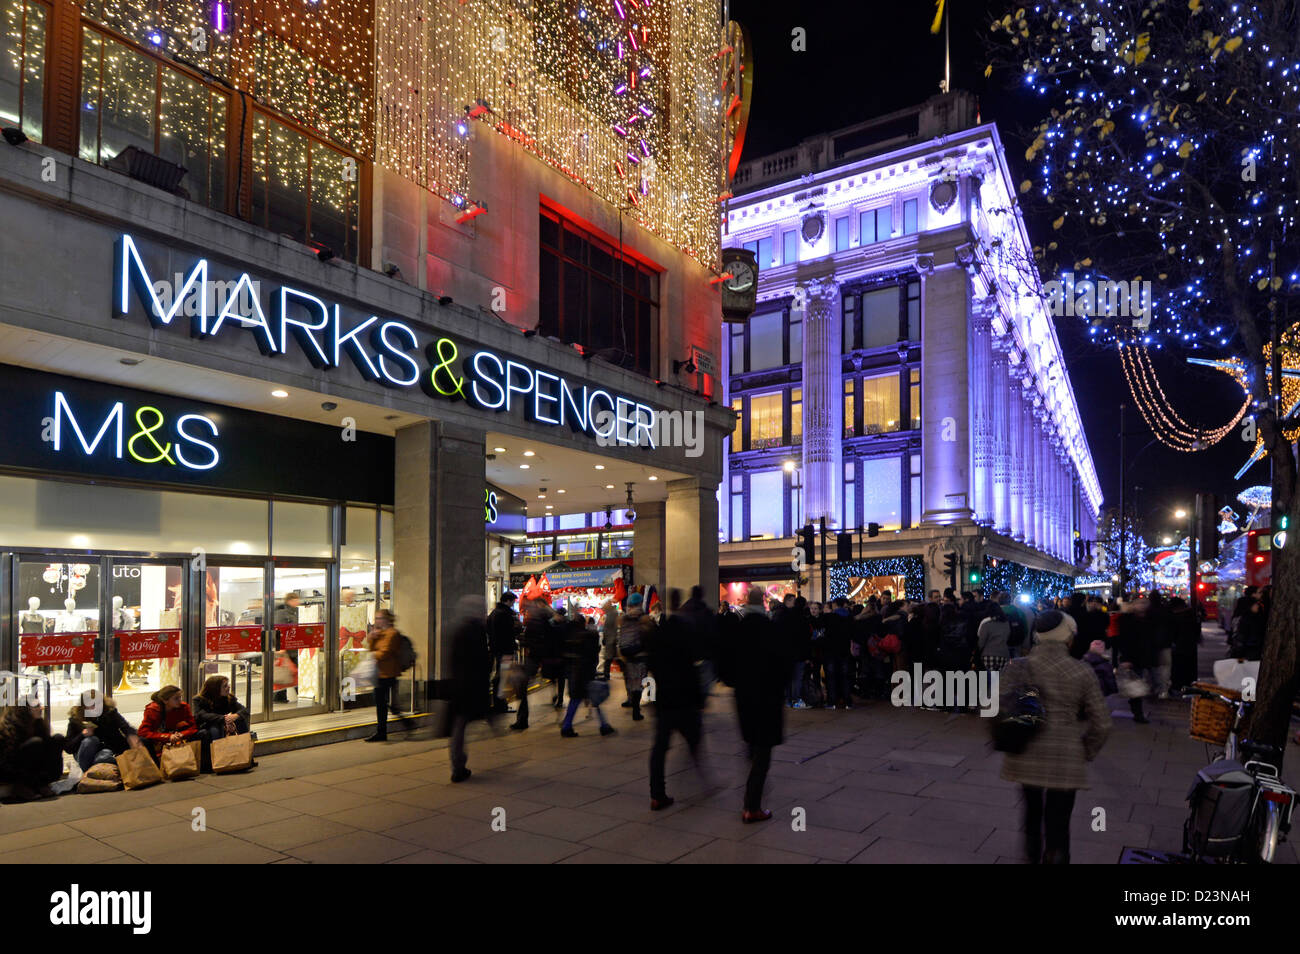 Décorations de Noël avec lumières de Noël Marks et Spencer Oxford Street West End M&S magasin d'affaires de détail à Londres à Nuit Selfridges Royaume-Uni Banque D'Images